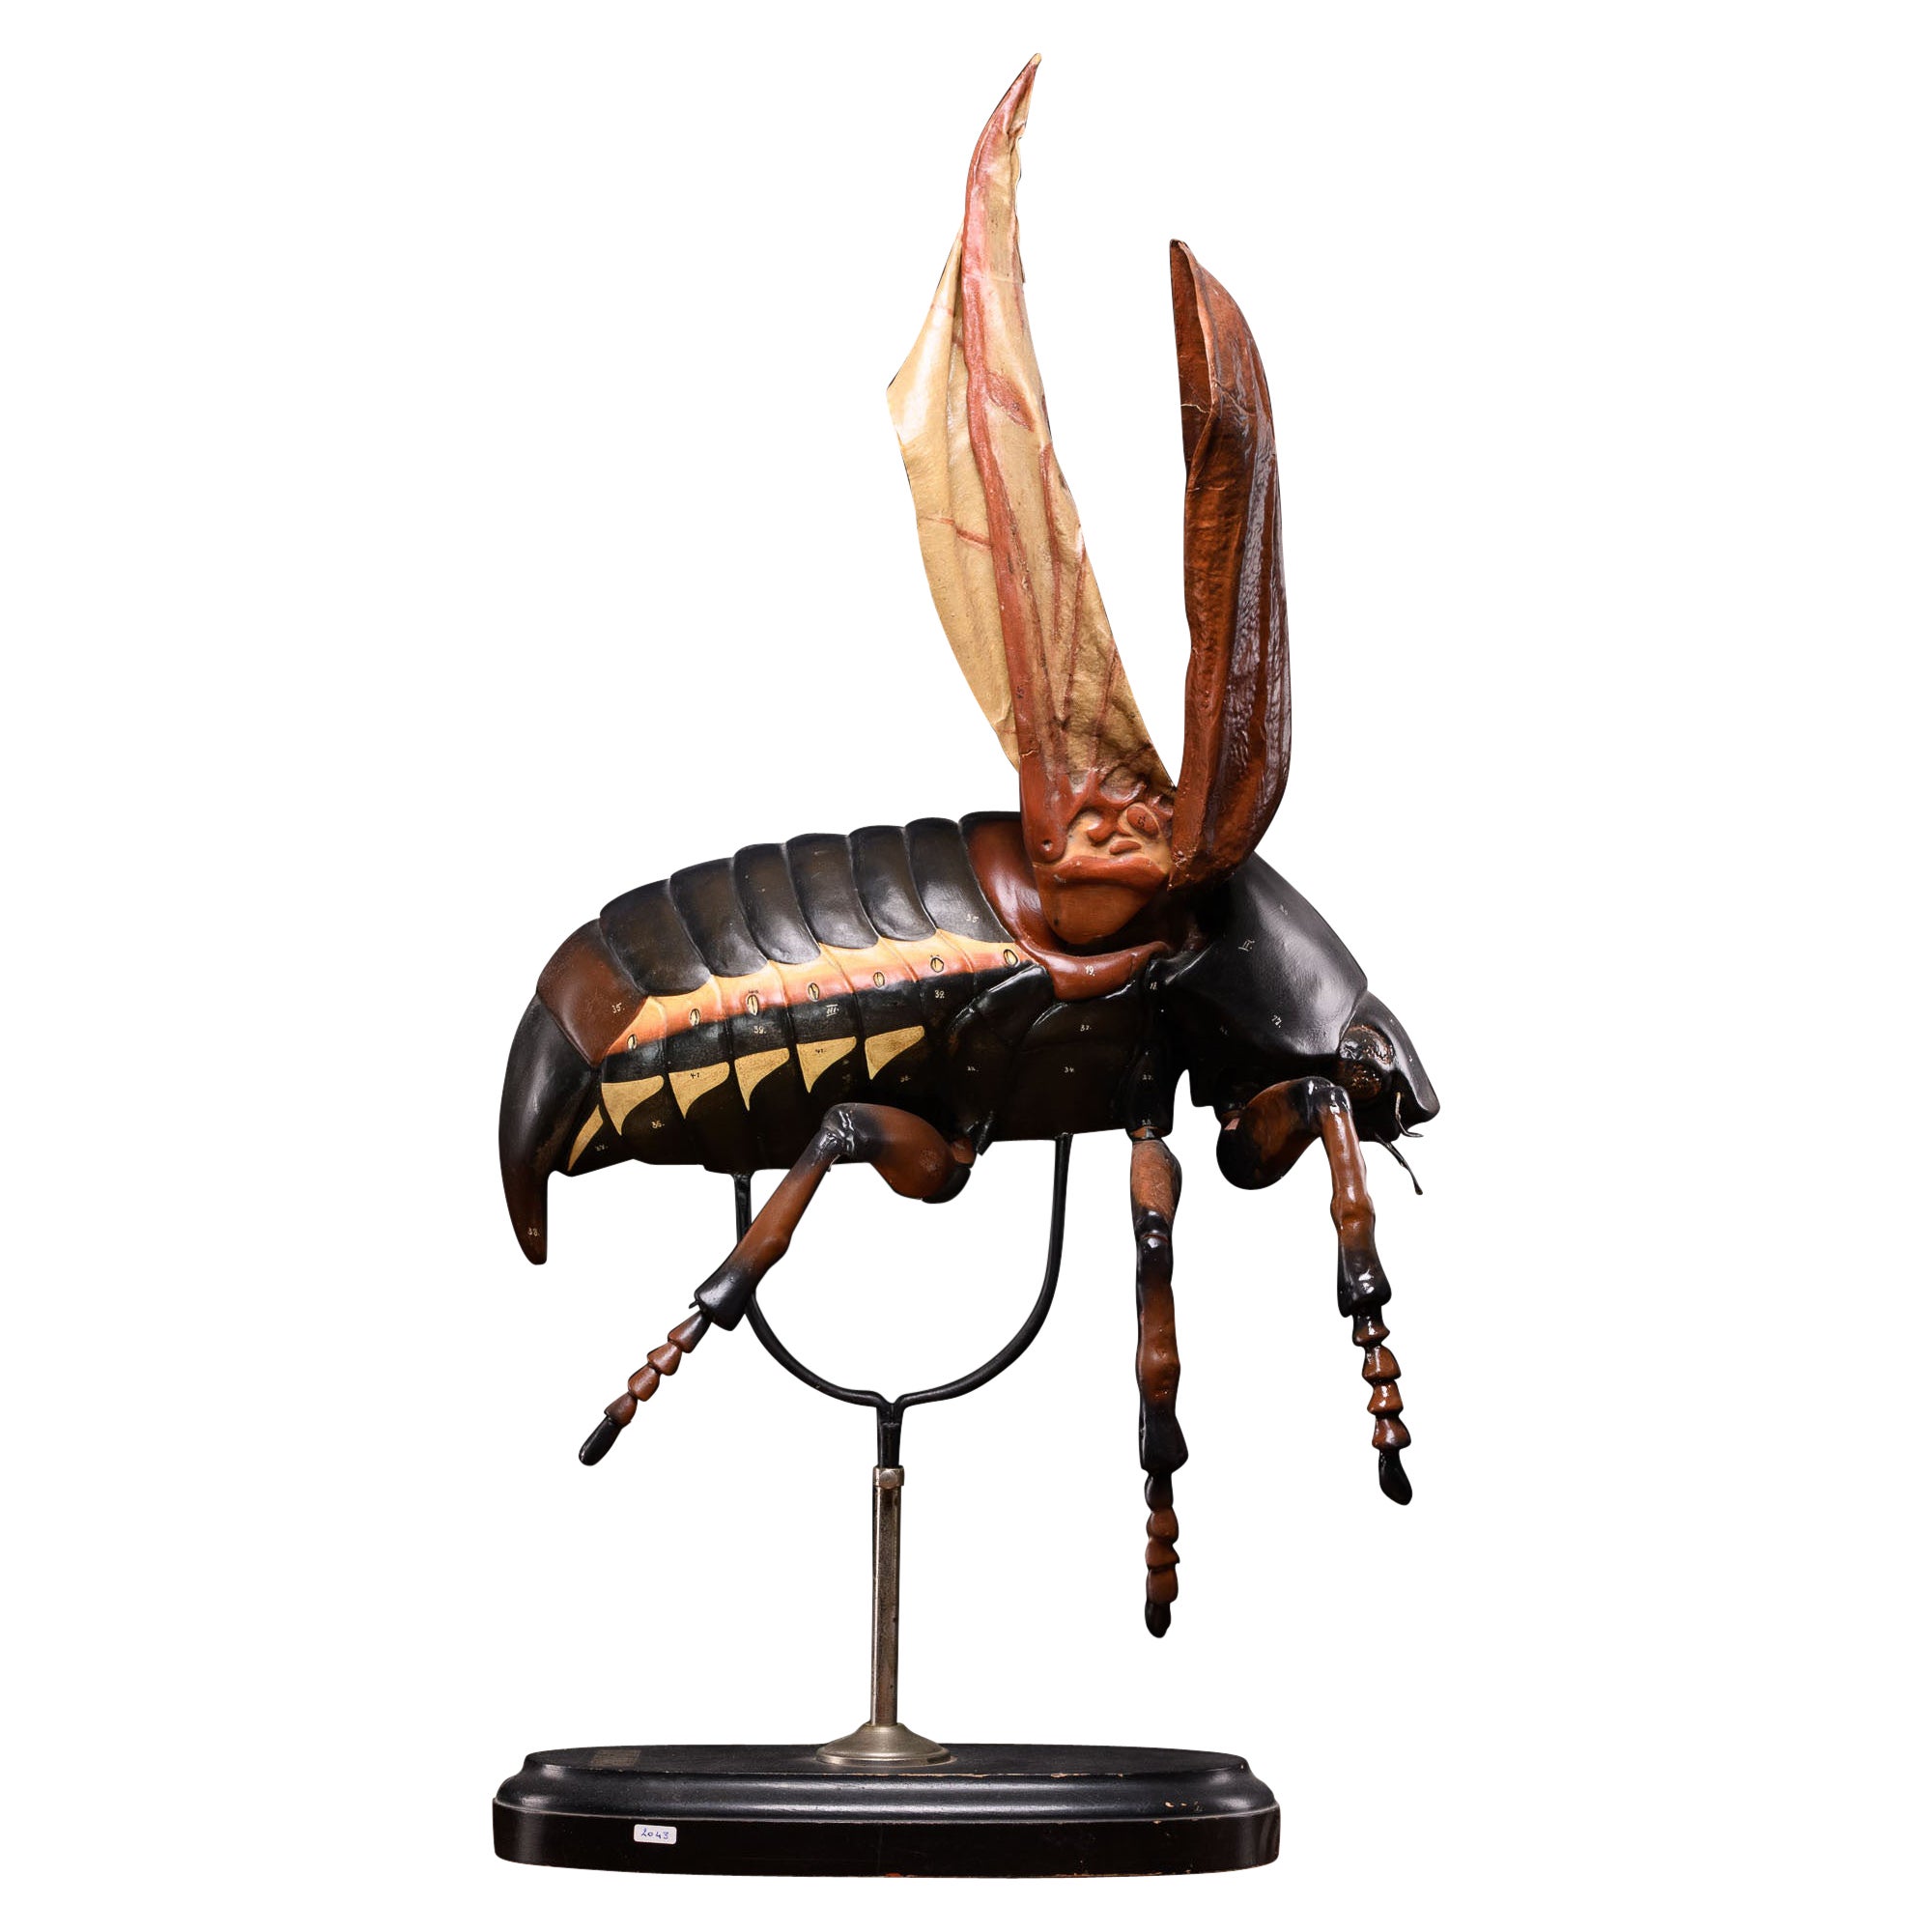 Didactical Modell des Cockchafer- oder May-Mückens, verkauft von der Denoyer-Geppert Company